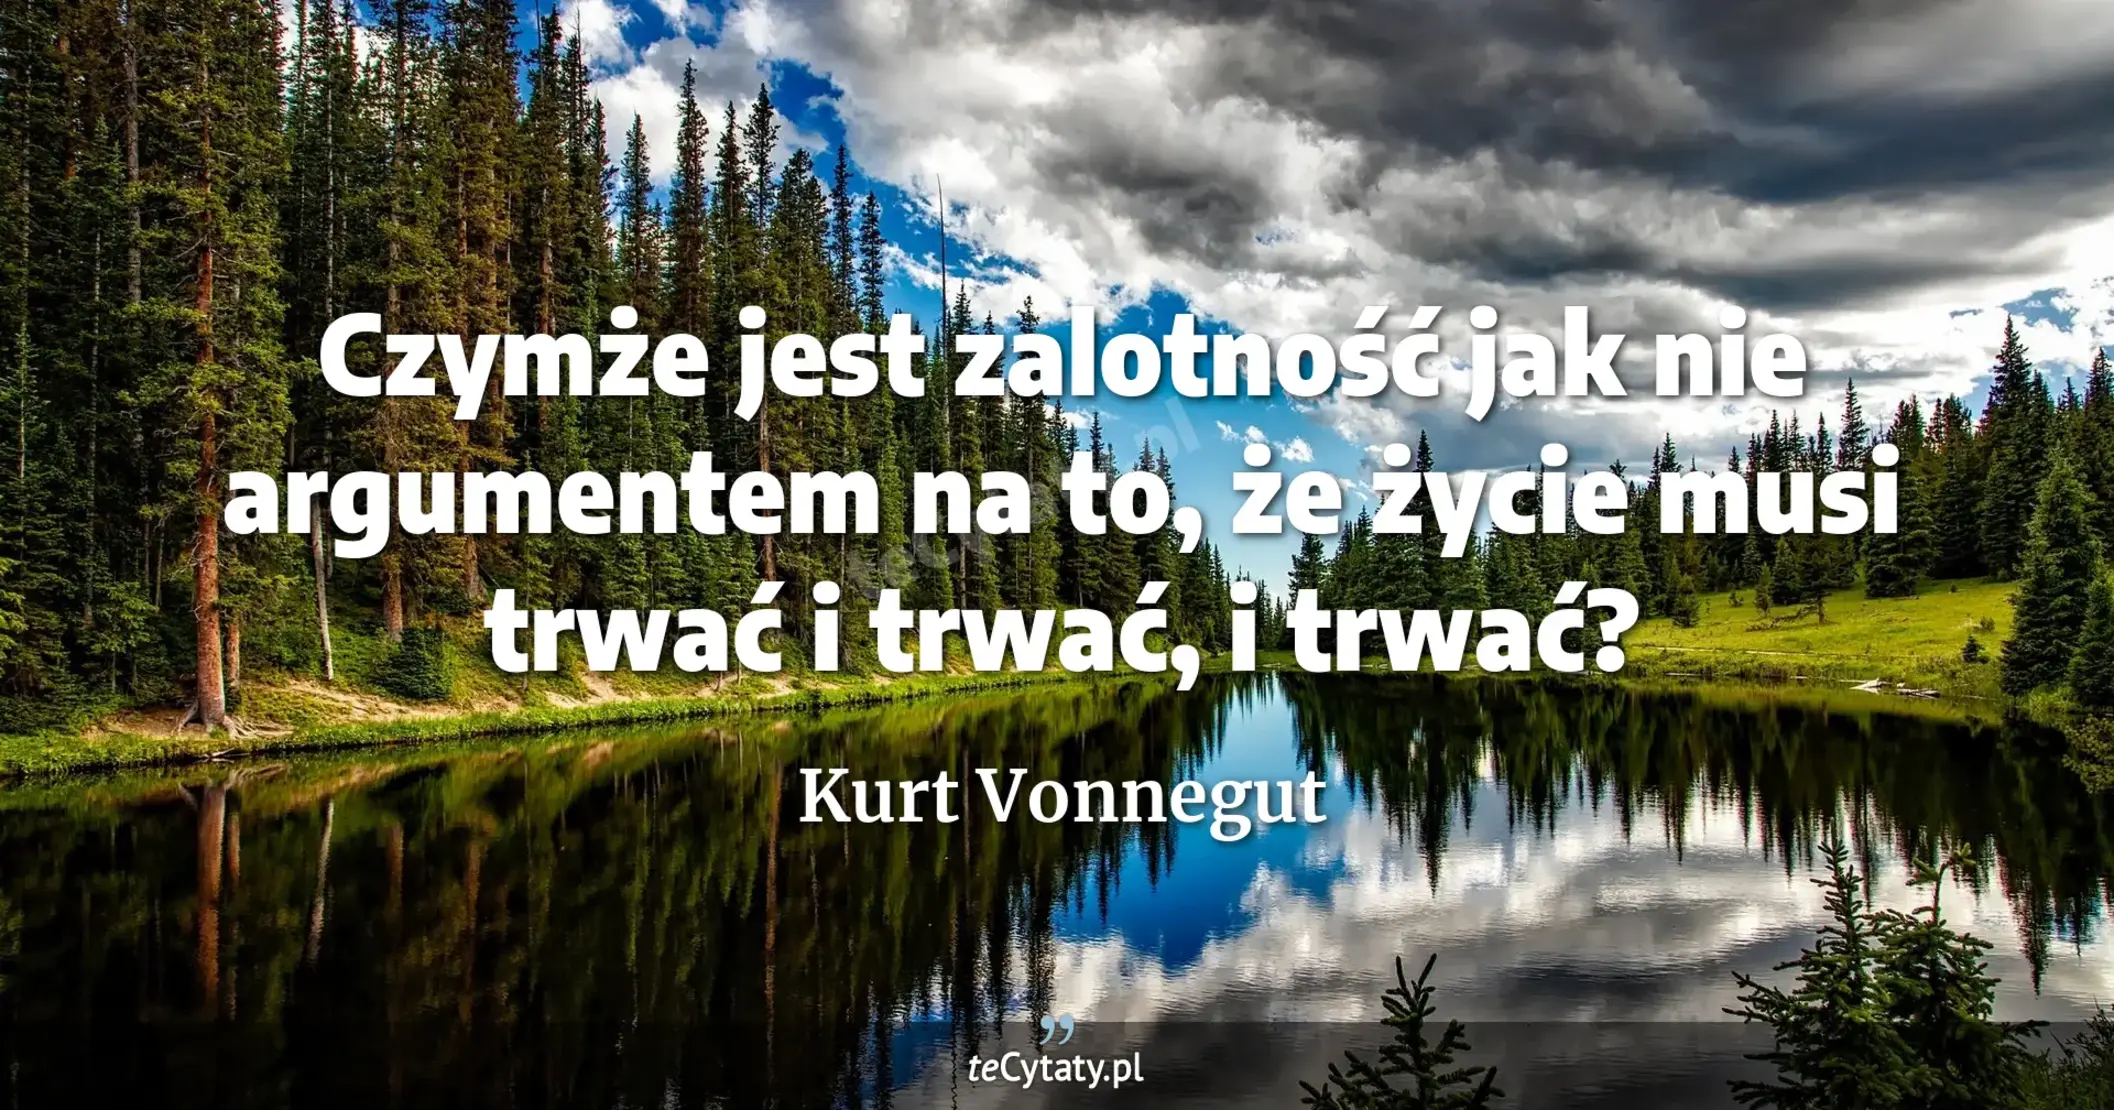 Czymże jest zalotność jak nie argumentem na to, że życie musi trwać i trwać, i trwać? - Kurt Vonnegut